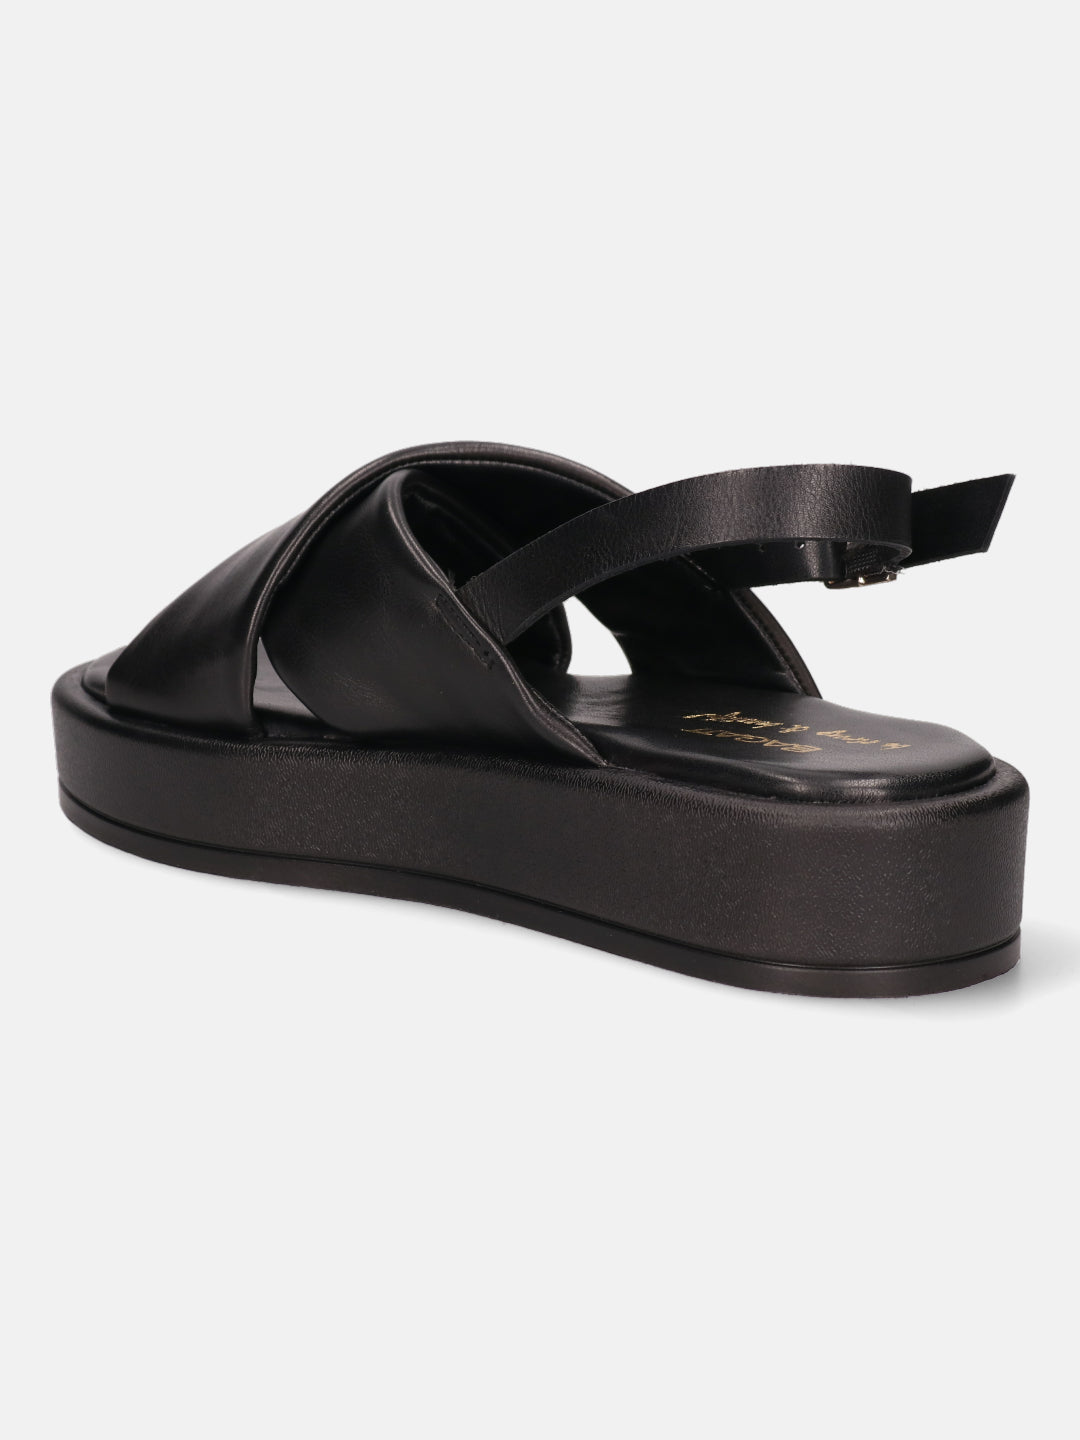 Hanoi Black Back Strap Sandals